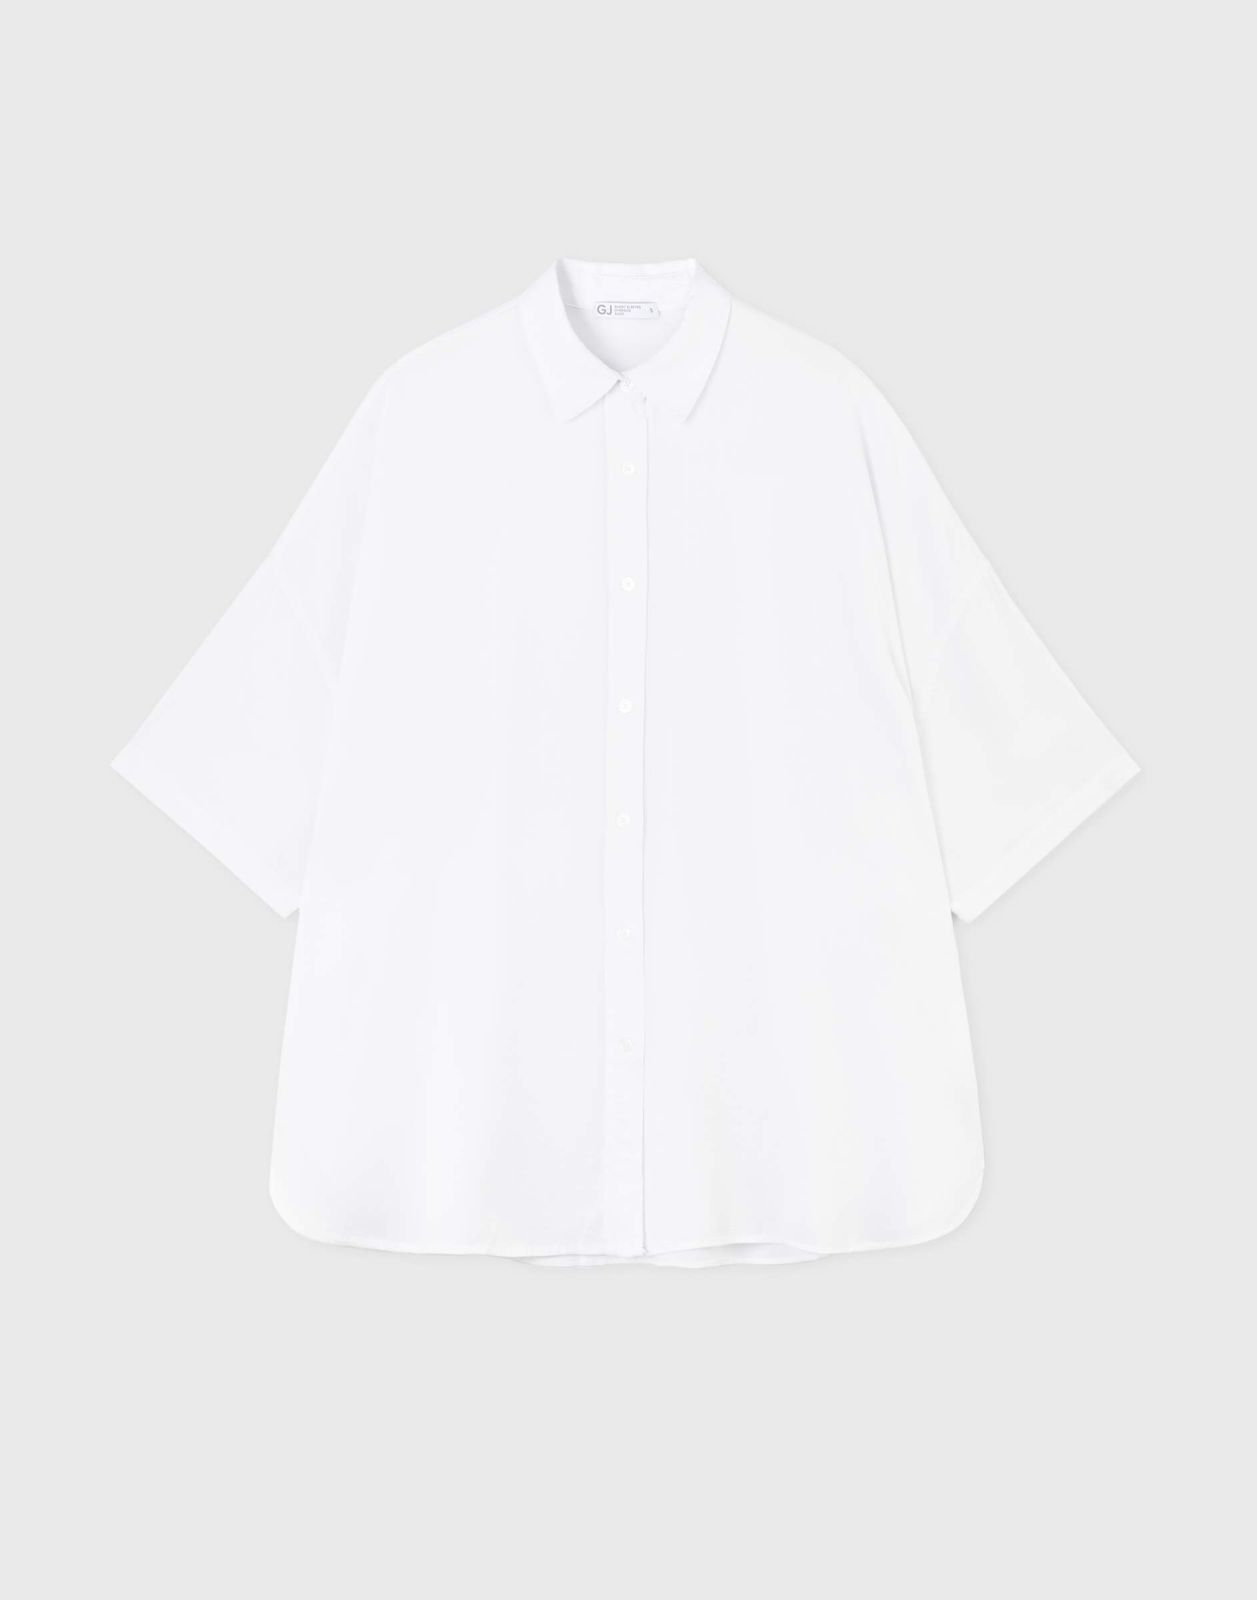 Рубашка женская Gloria Jeans GWT003611 белый XS/164